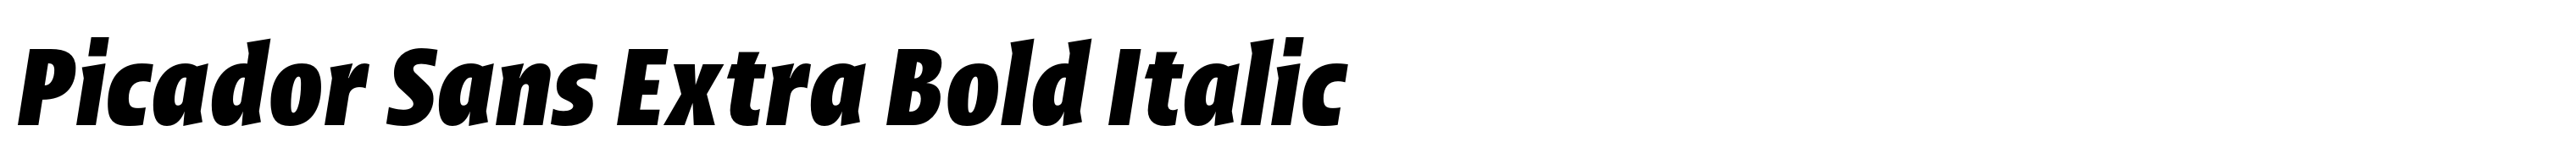 Picador Sans Extra Bold Italic